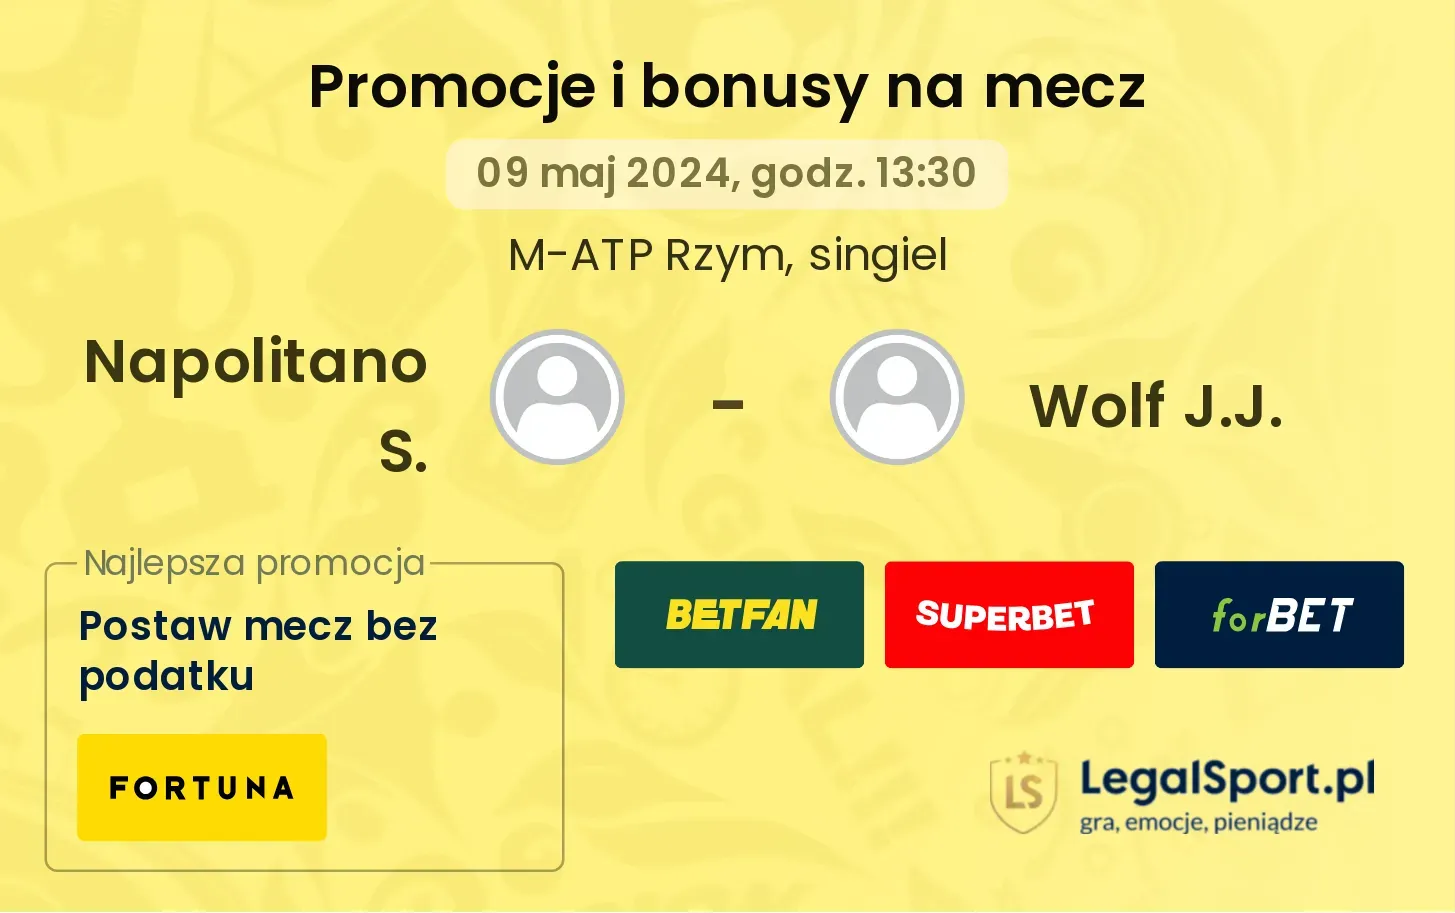 Napolitano S. - Wolf J.J. promocje bonusy na mecz